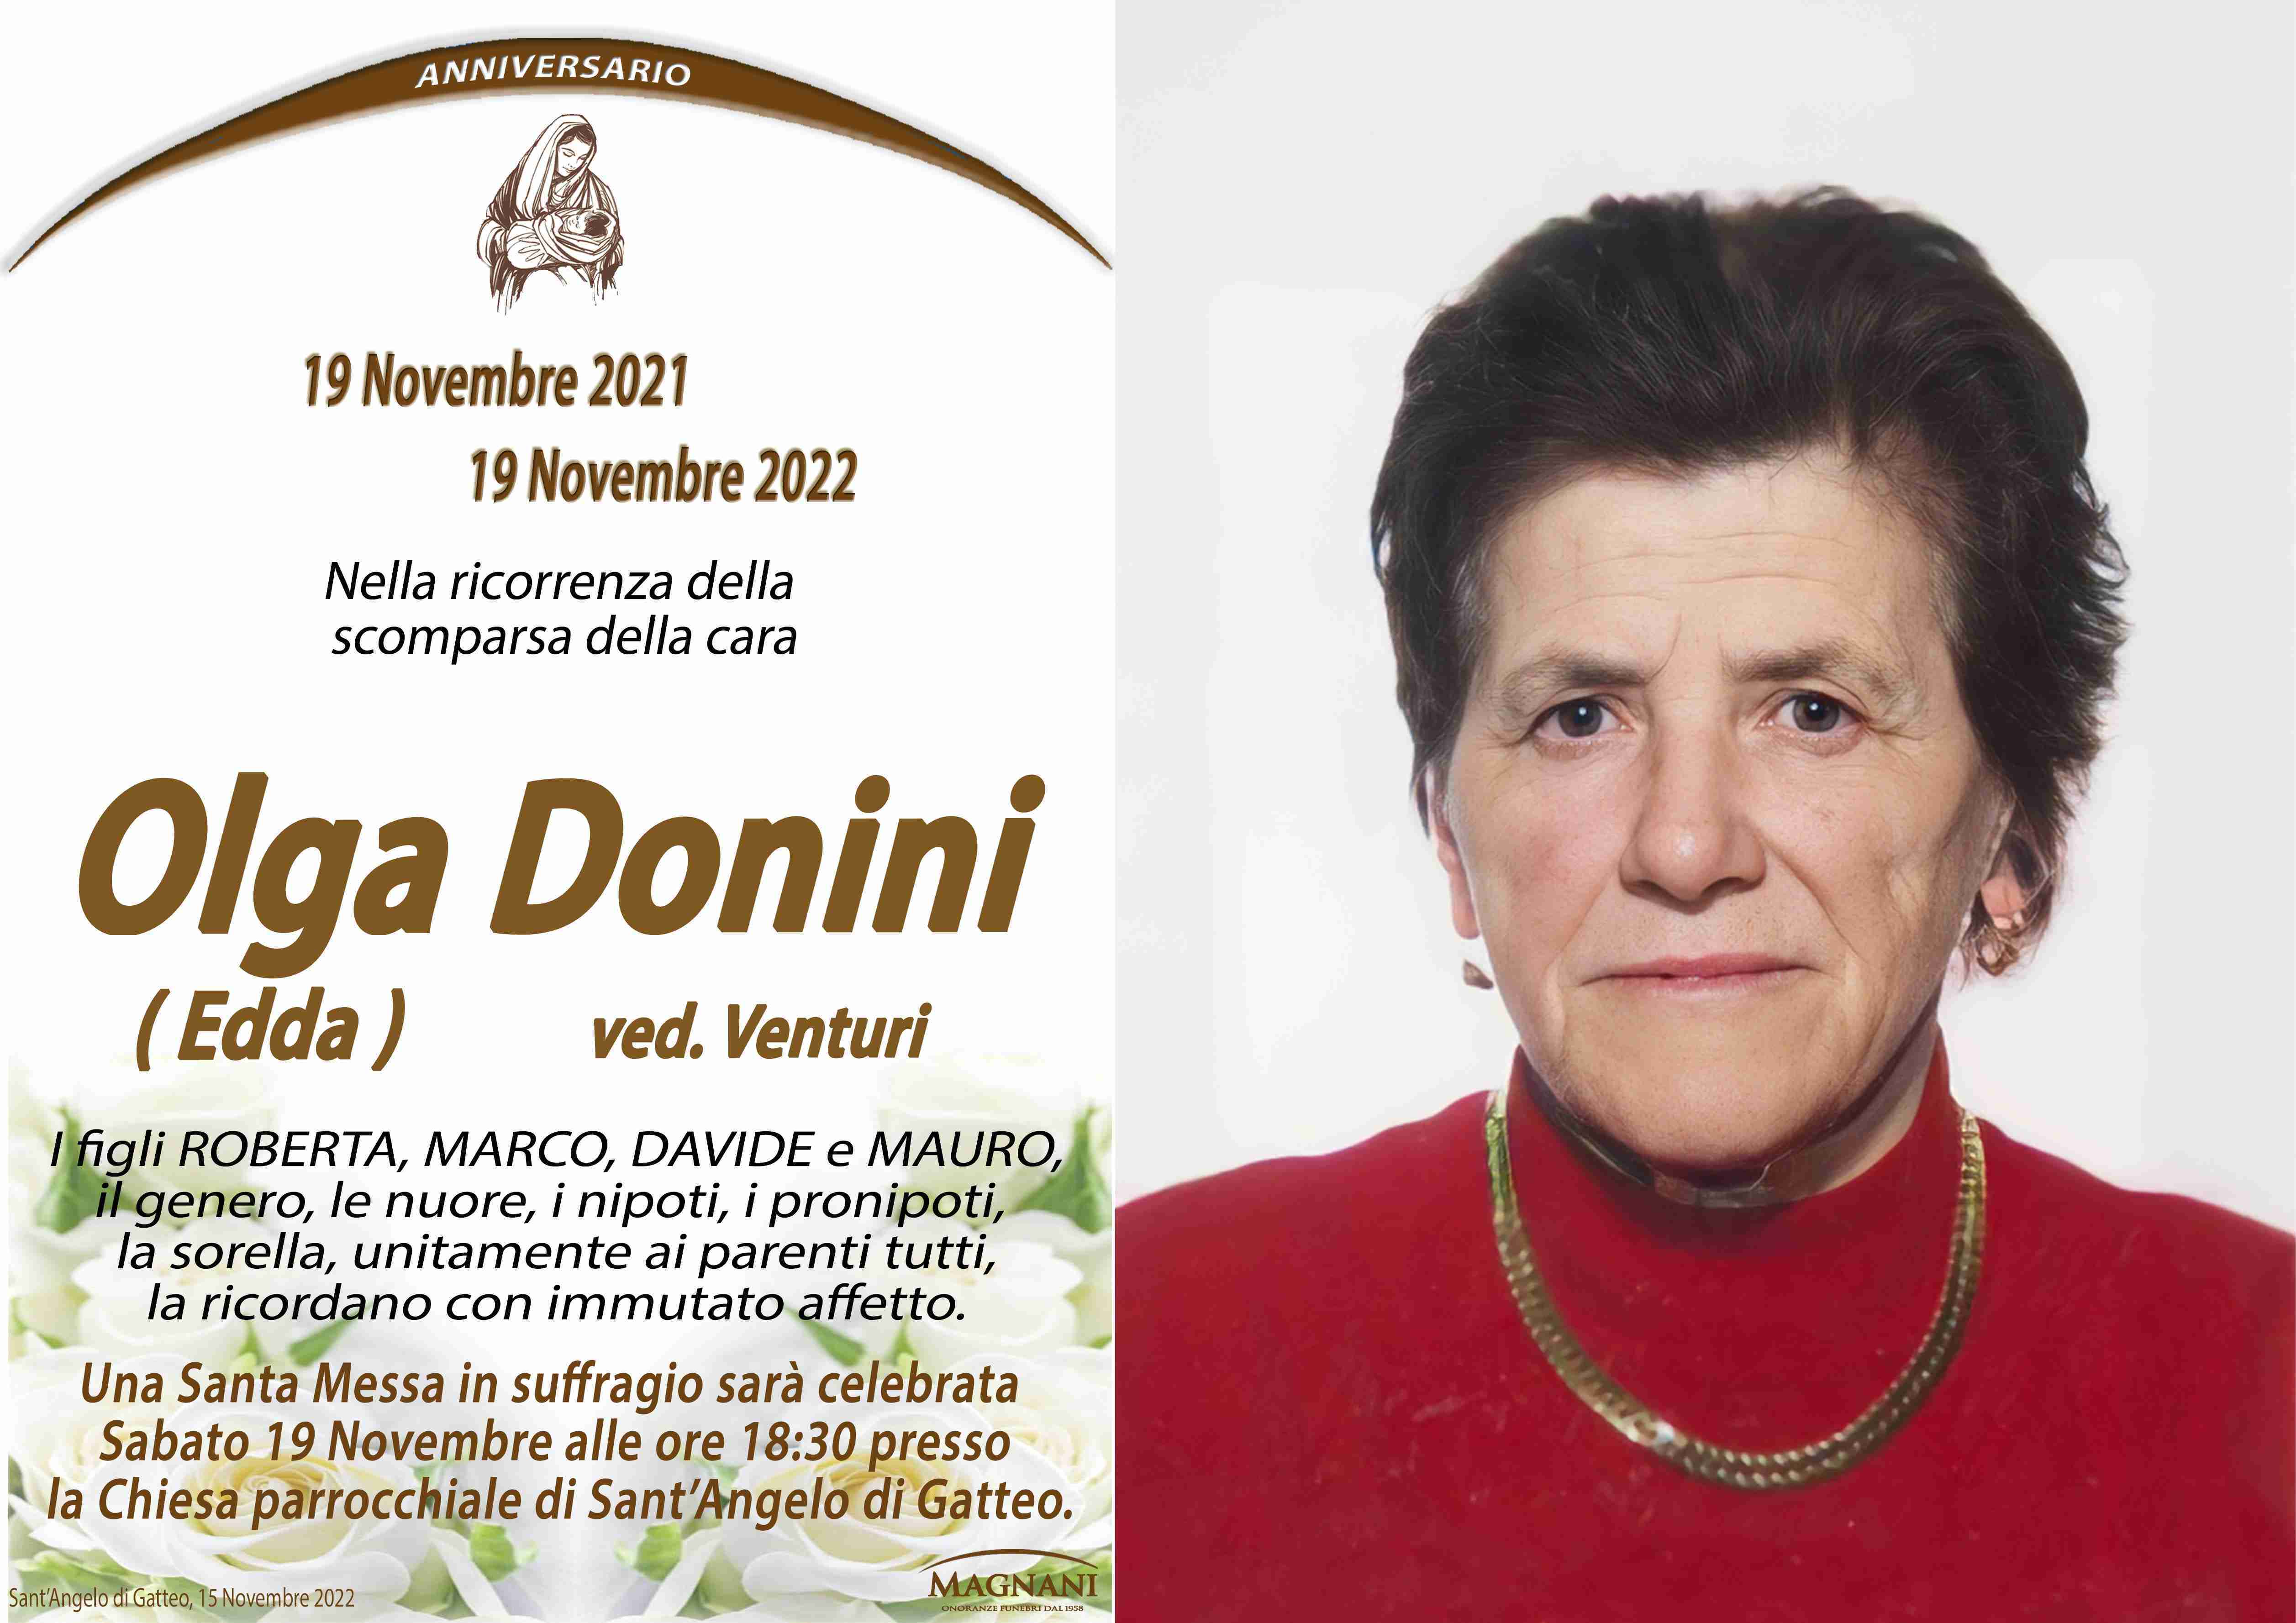 Olga Donini